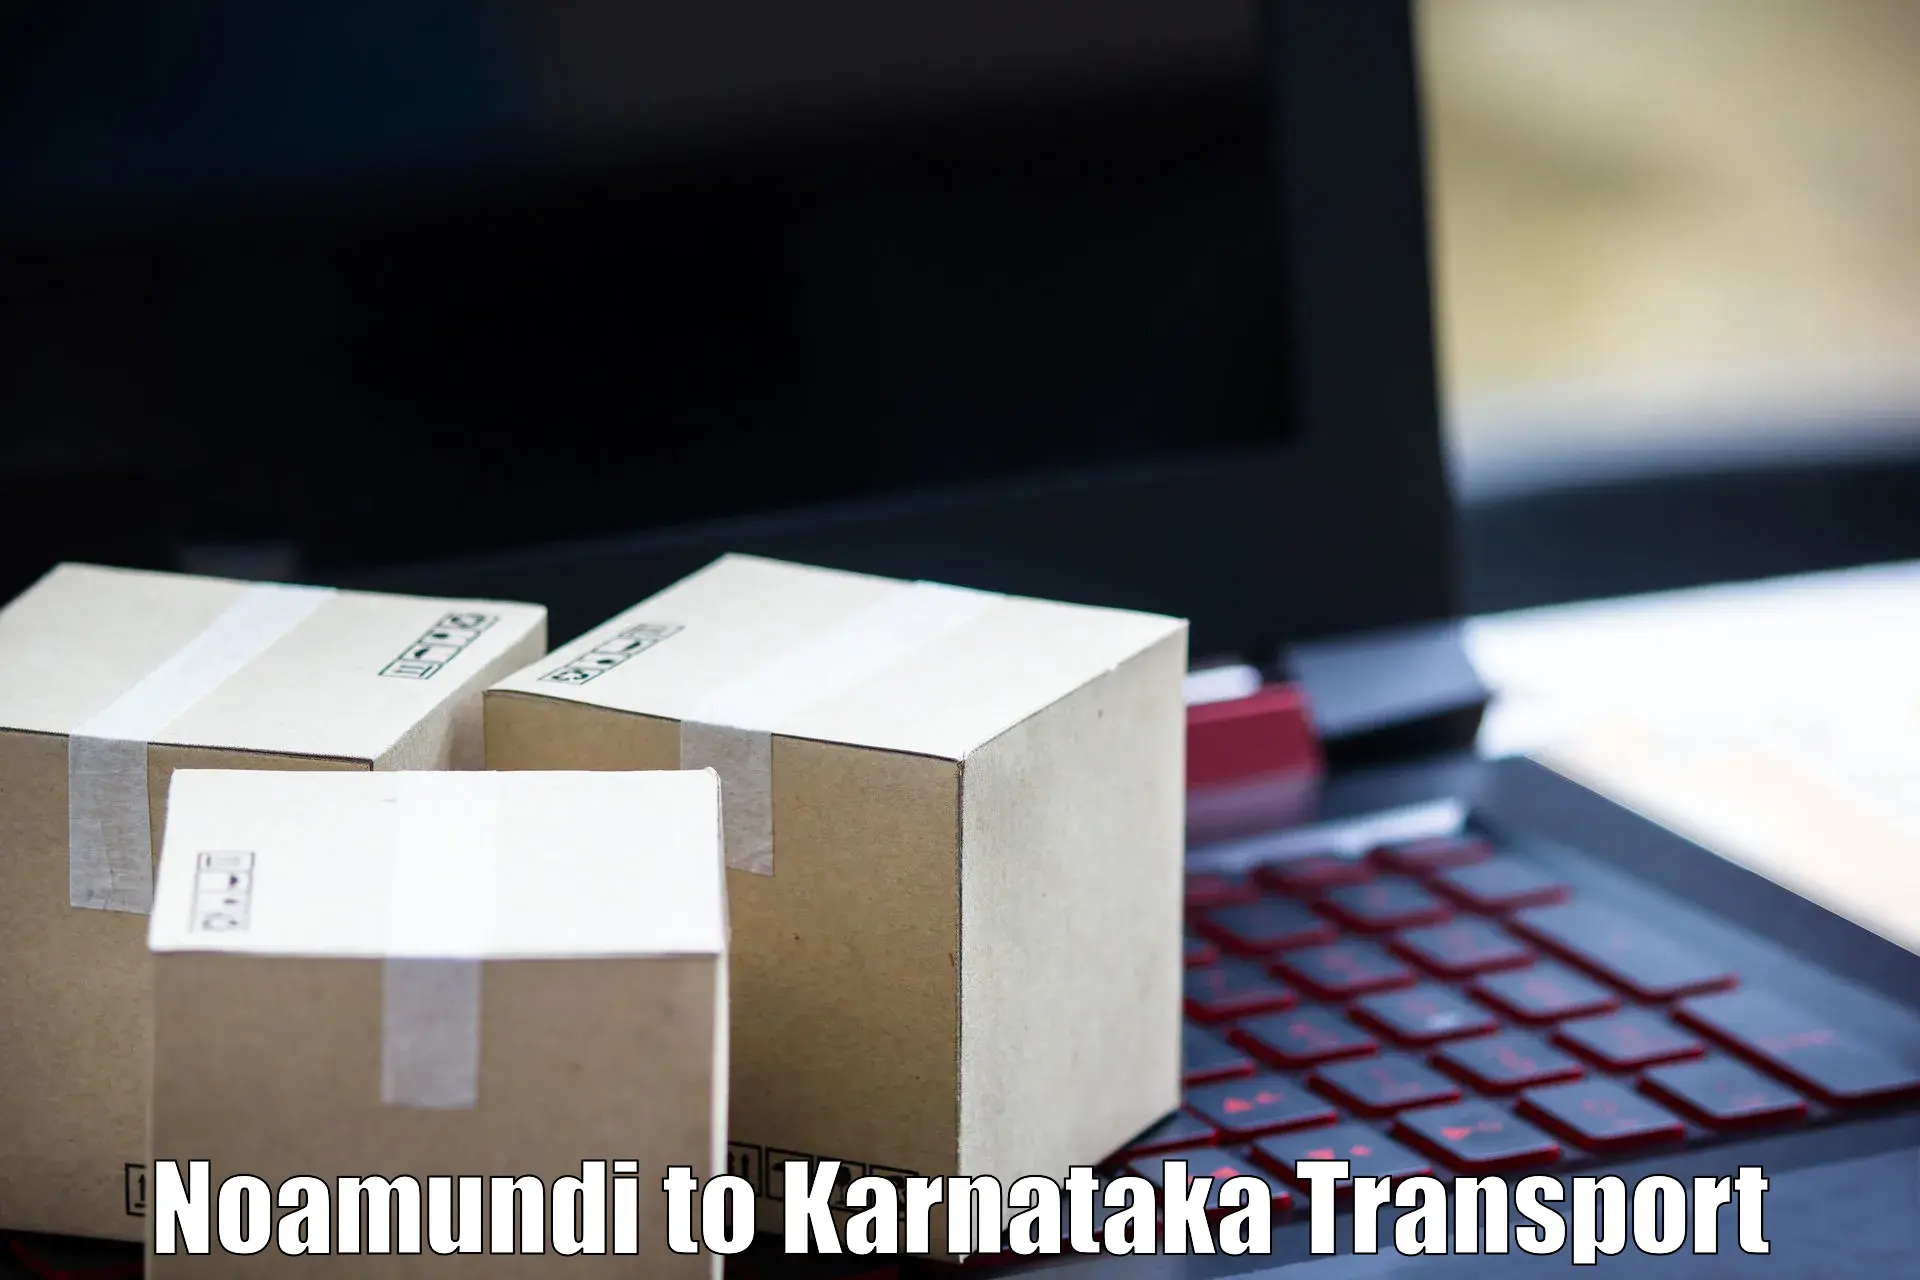 All India transport service Noamundi to Tumkur